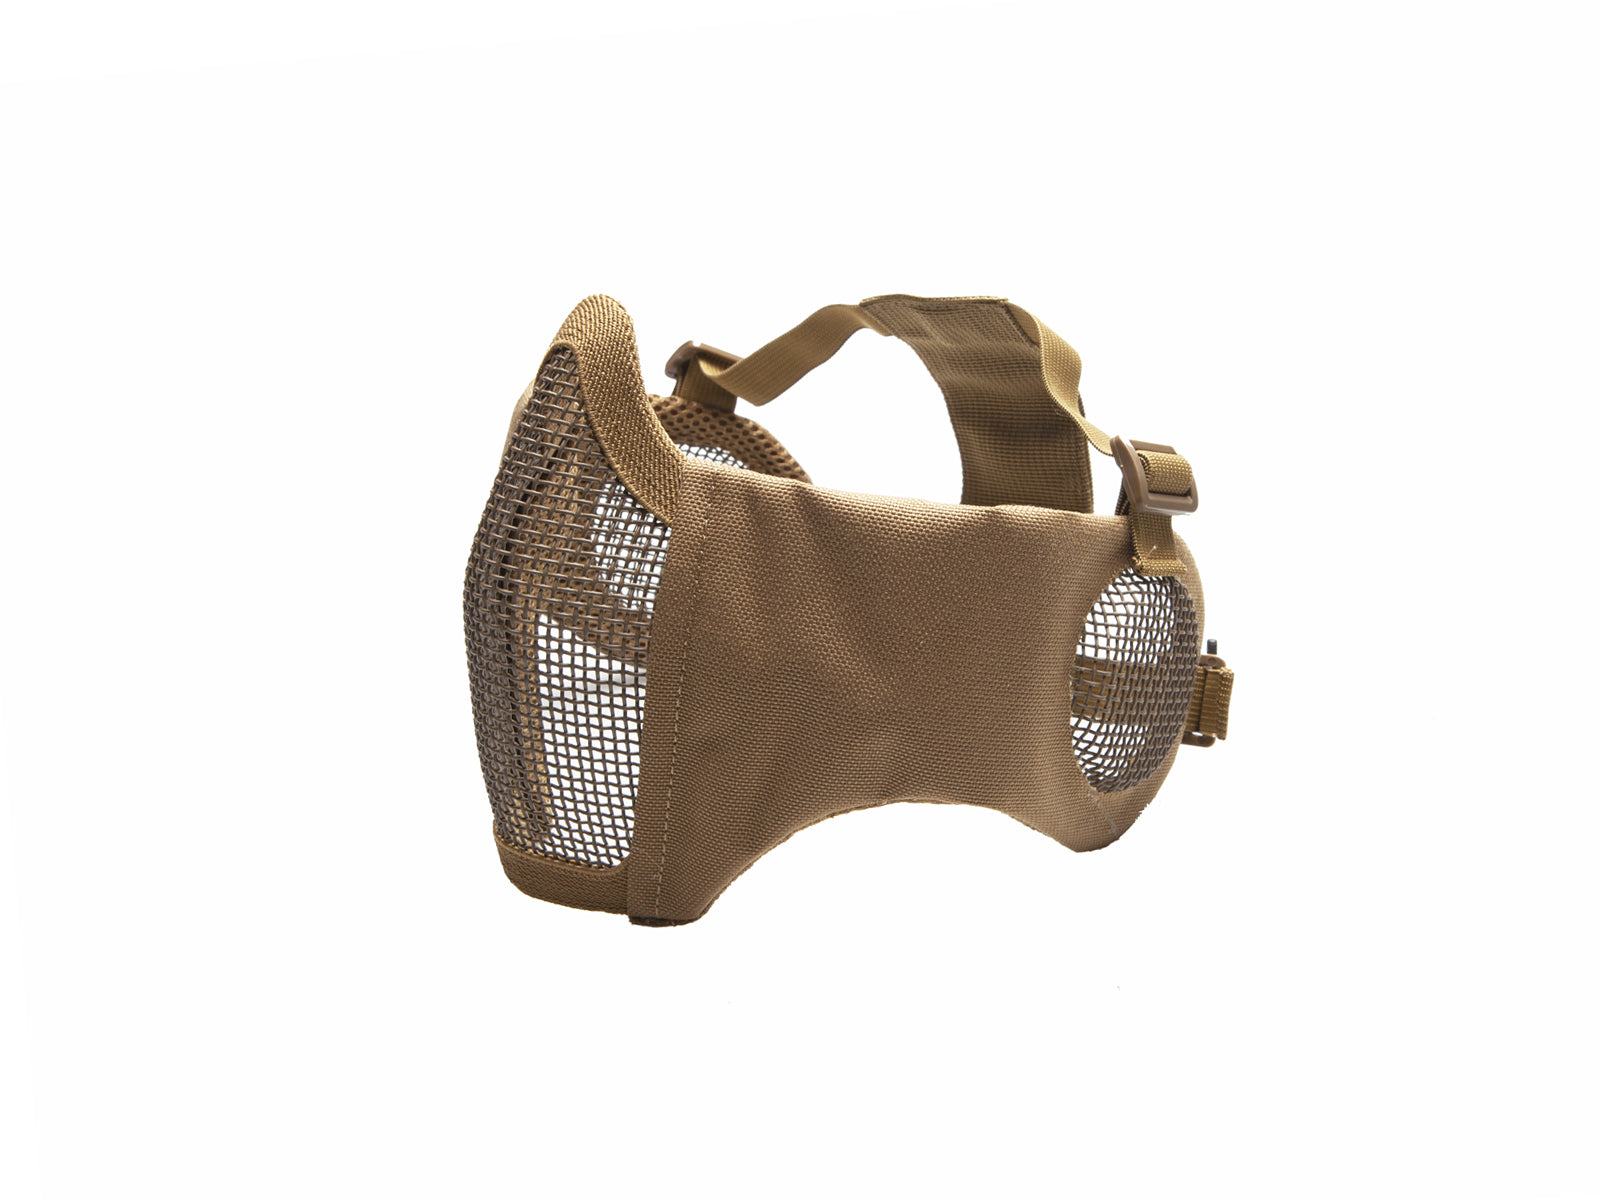 ASG Metal Mesh Airsoft Mask w/ Cheekpad & Ear Protection – Desert Tan